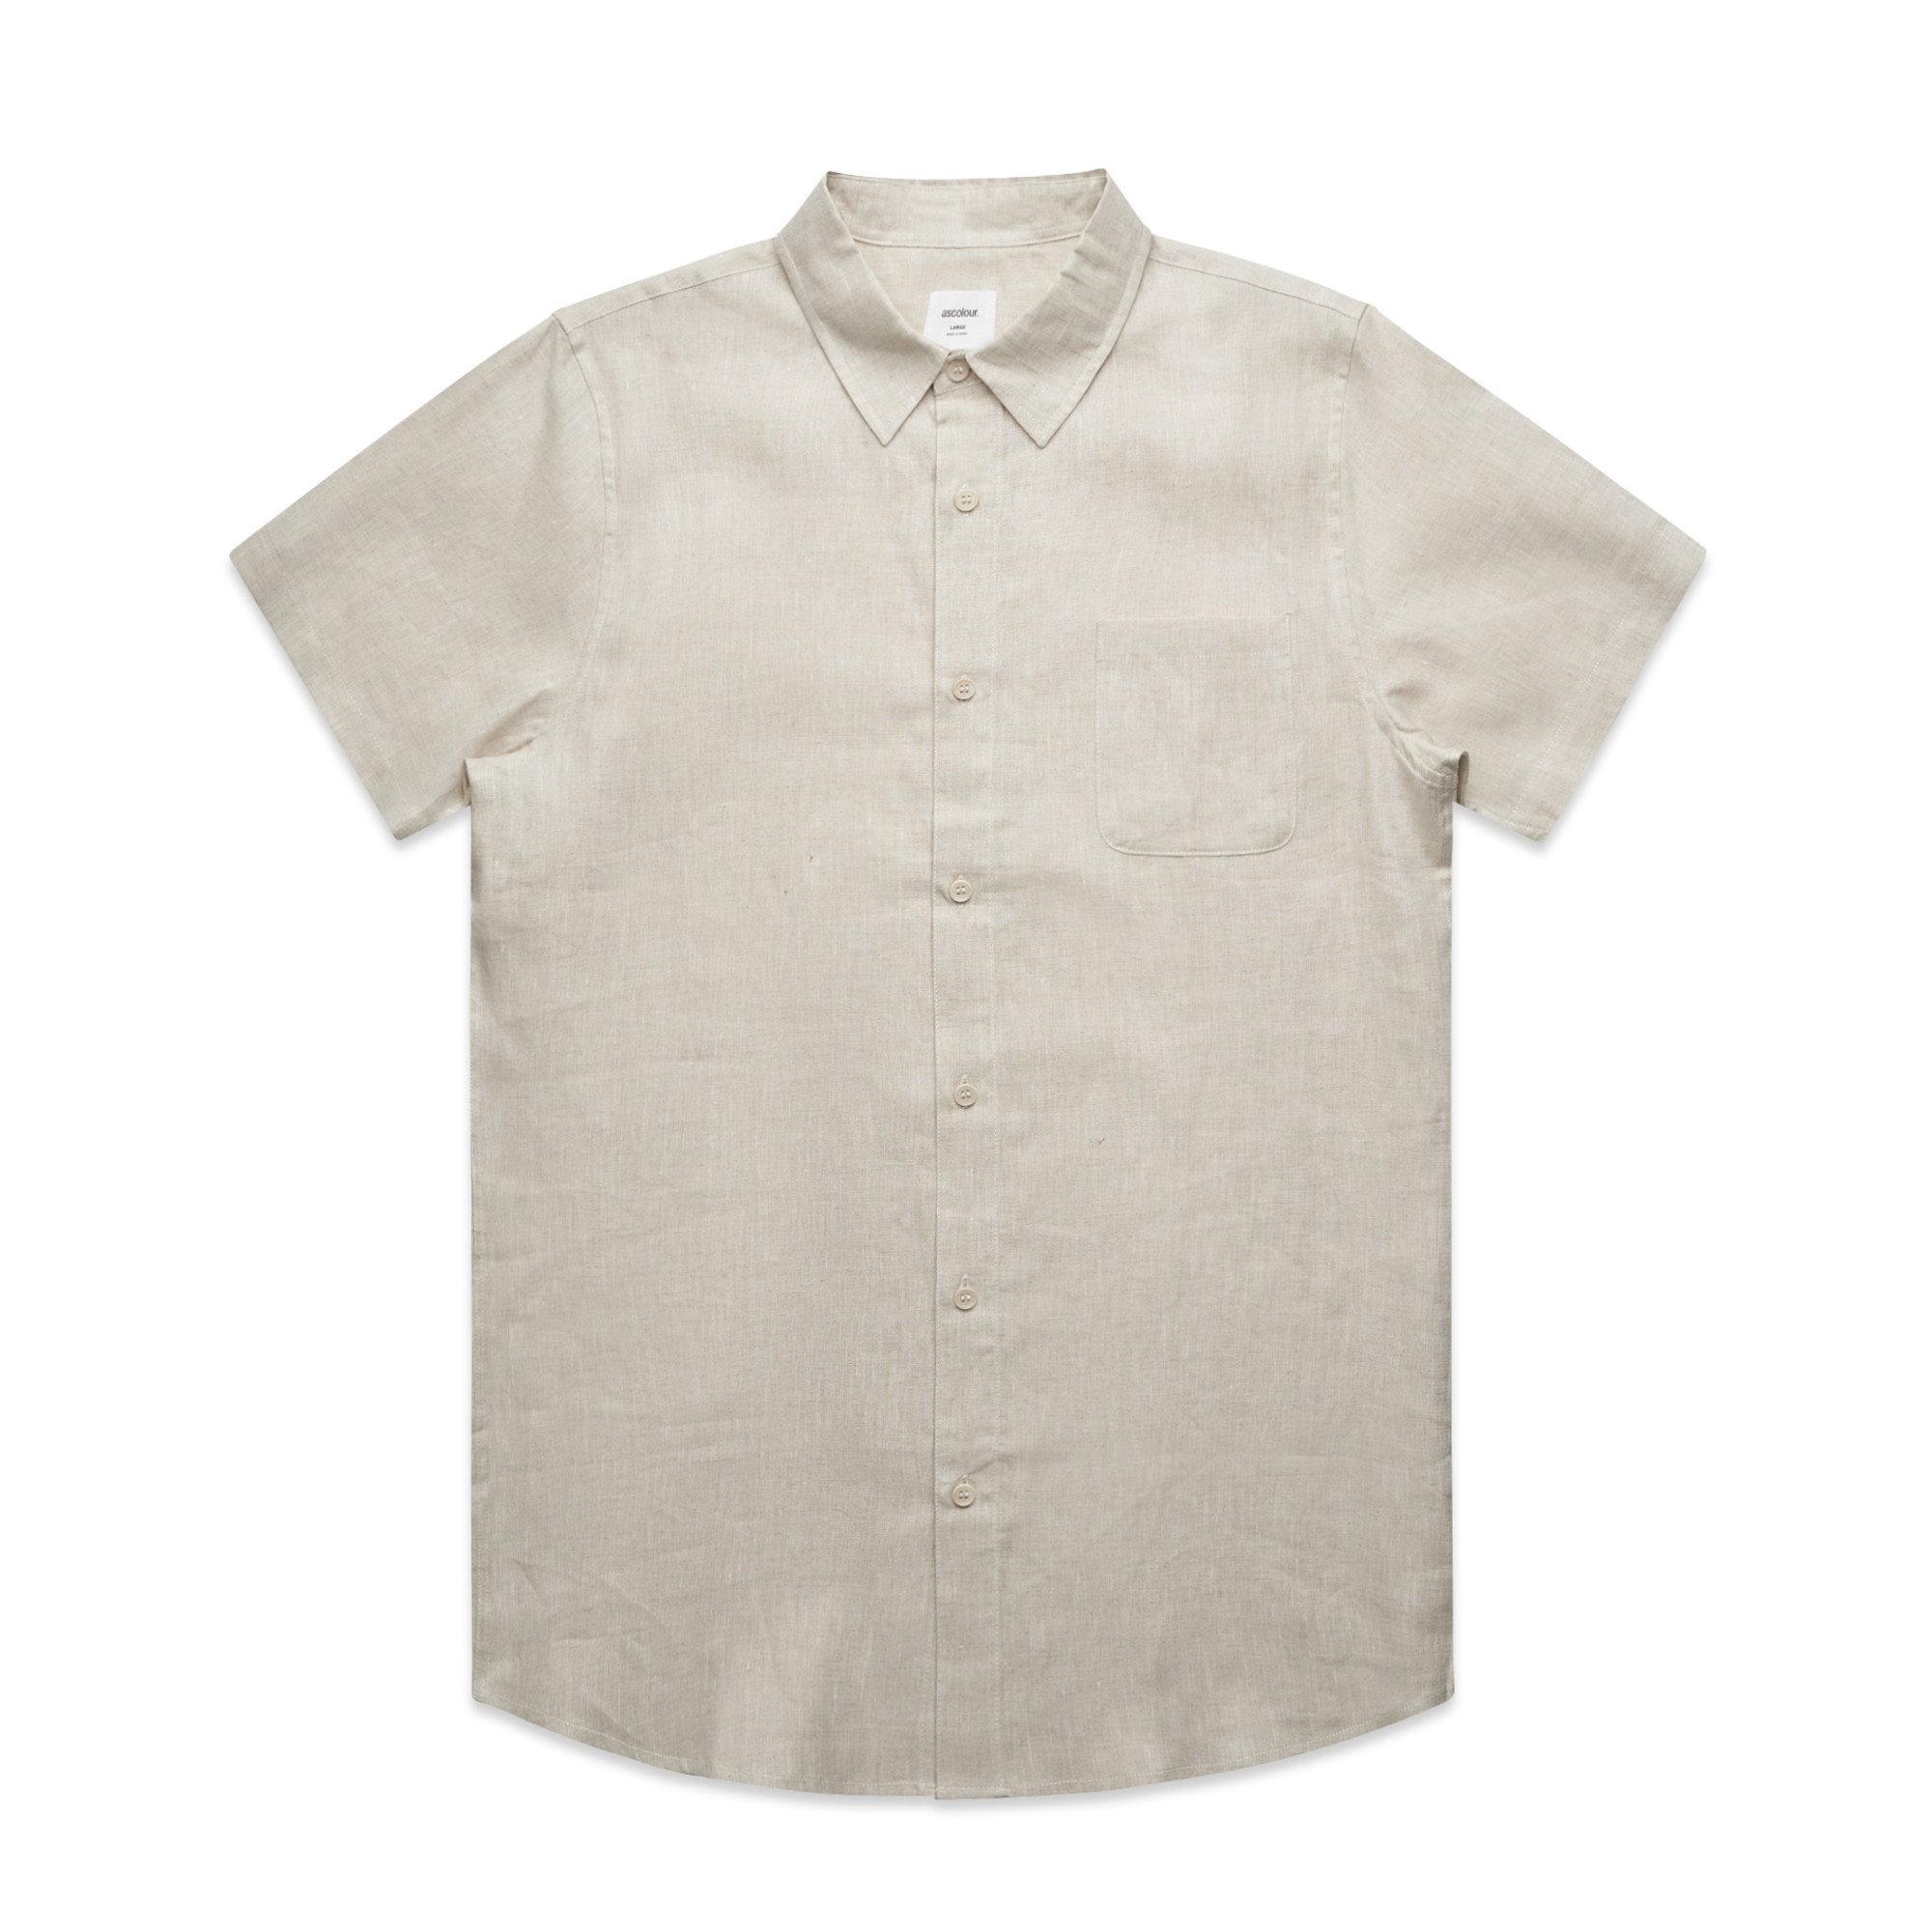 Mens Linen Shirt | Business Work Shirts | Mens AS Colour Shirt Short ...